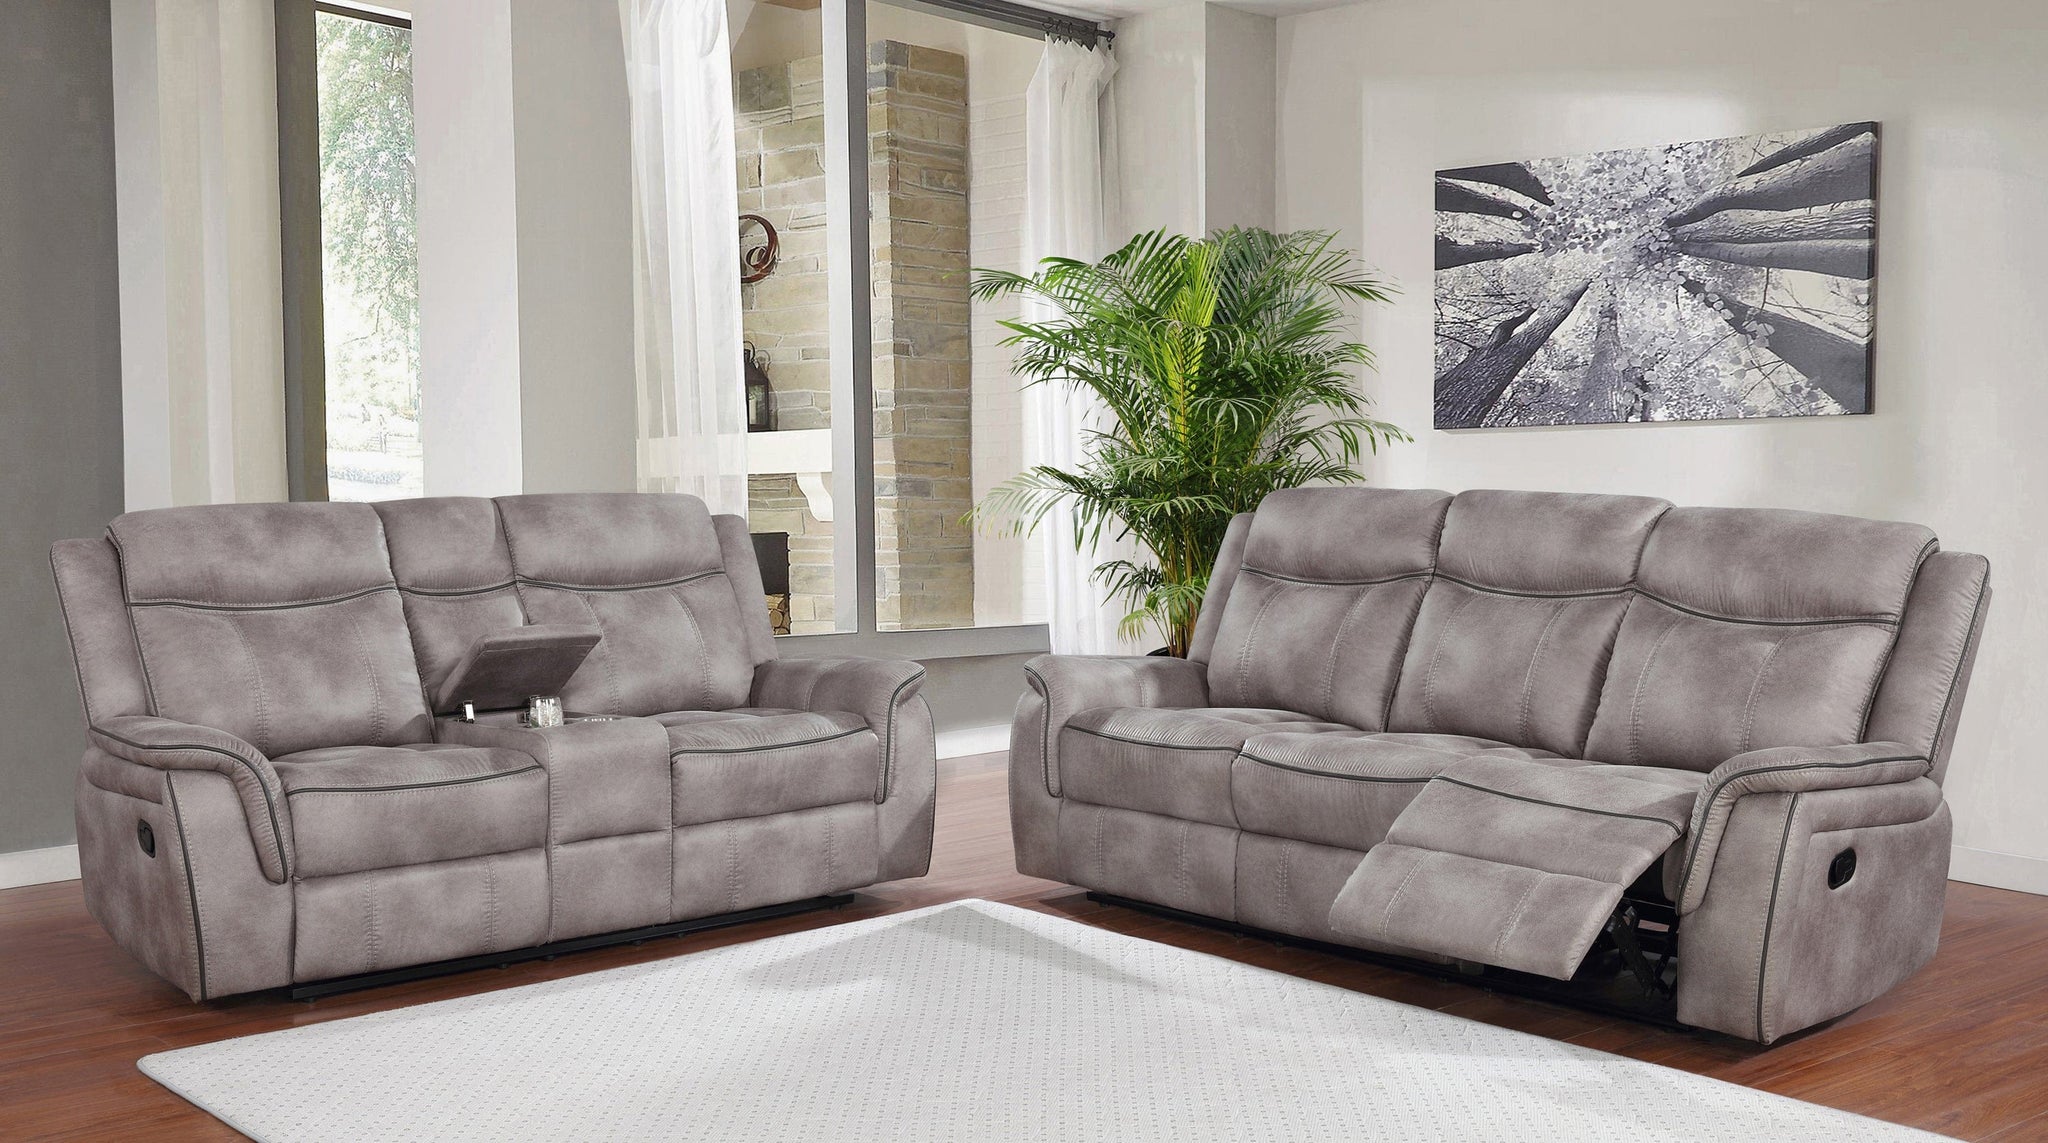 Lawrence Upholstered Tufted Living Room Set - SKU: 603501-S2